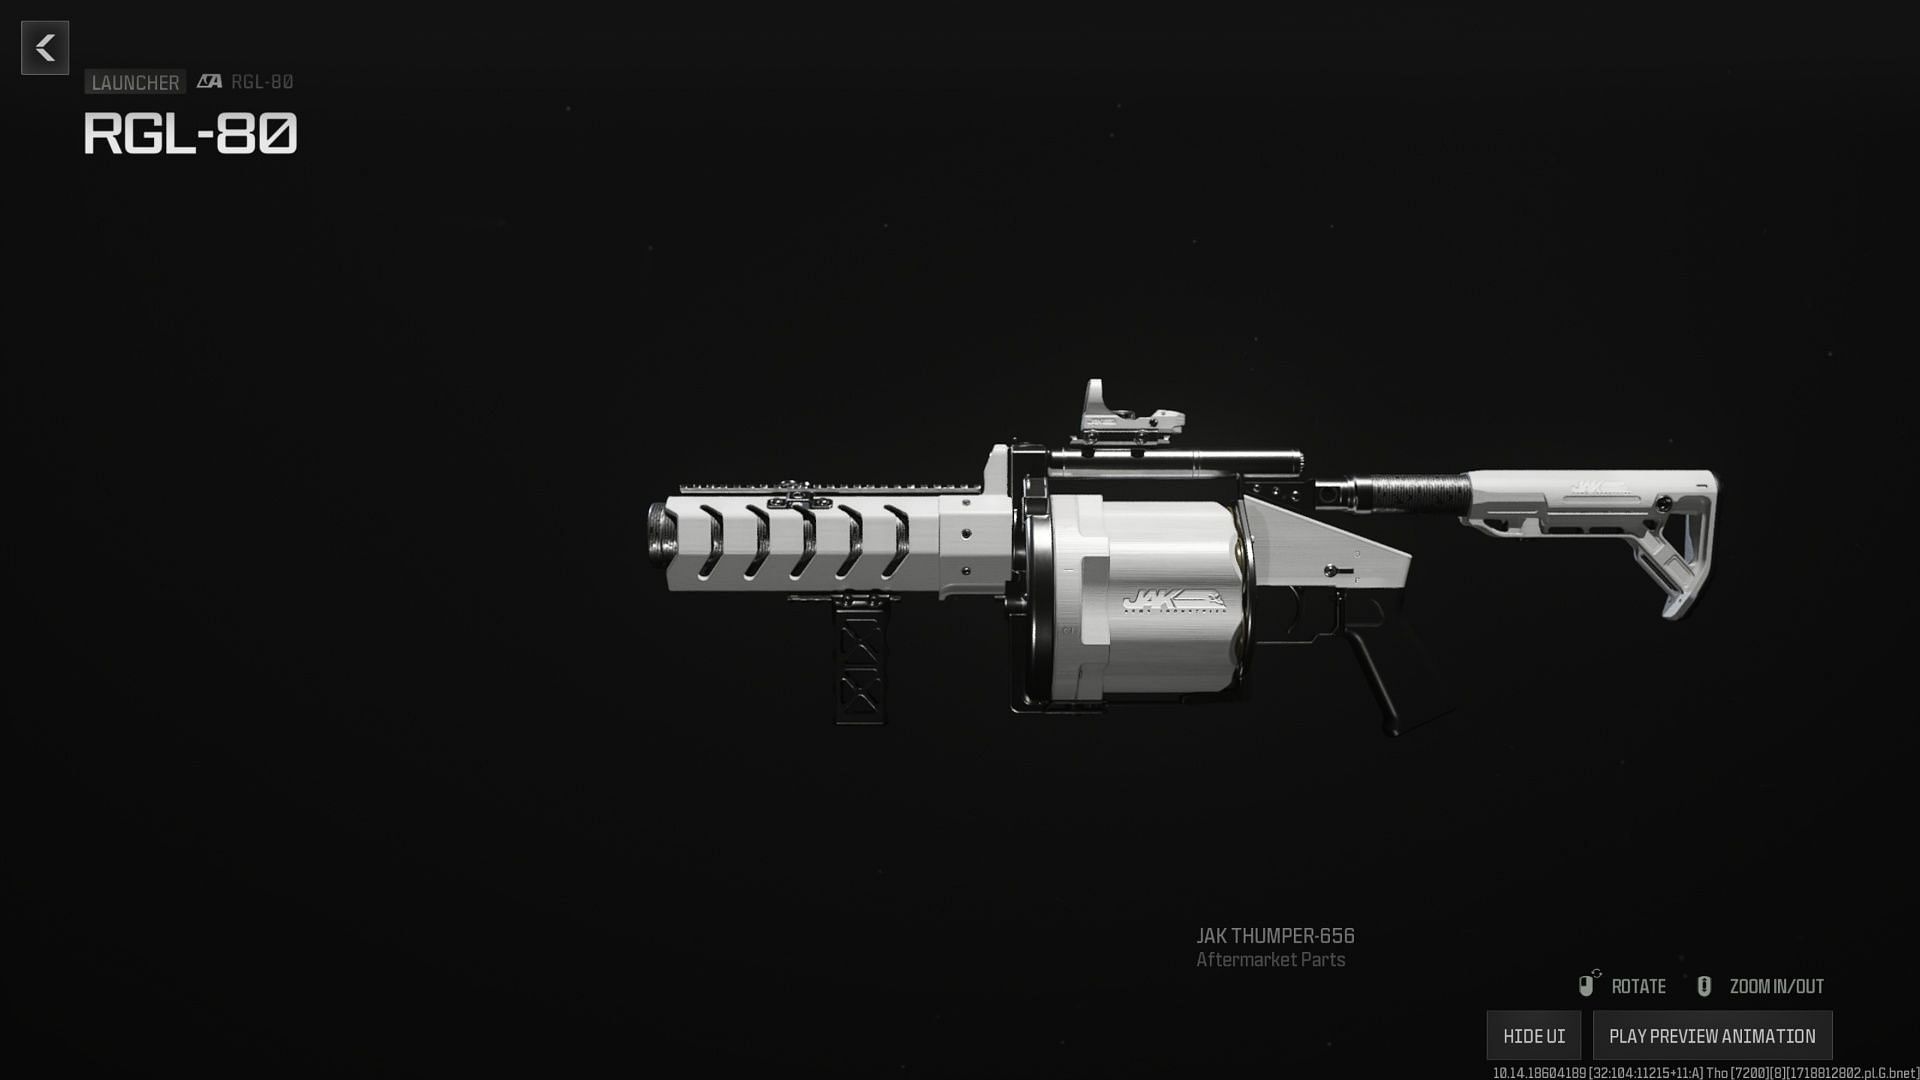 JAK Thumper-656 Conversion Kit (Image via Activision)